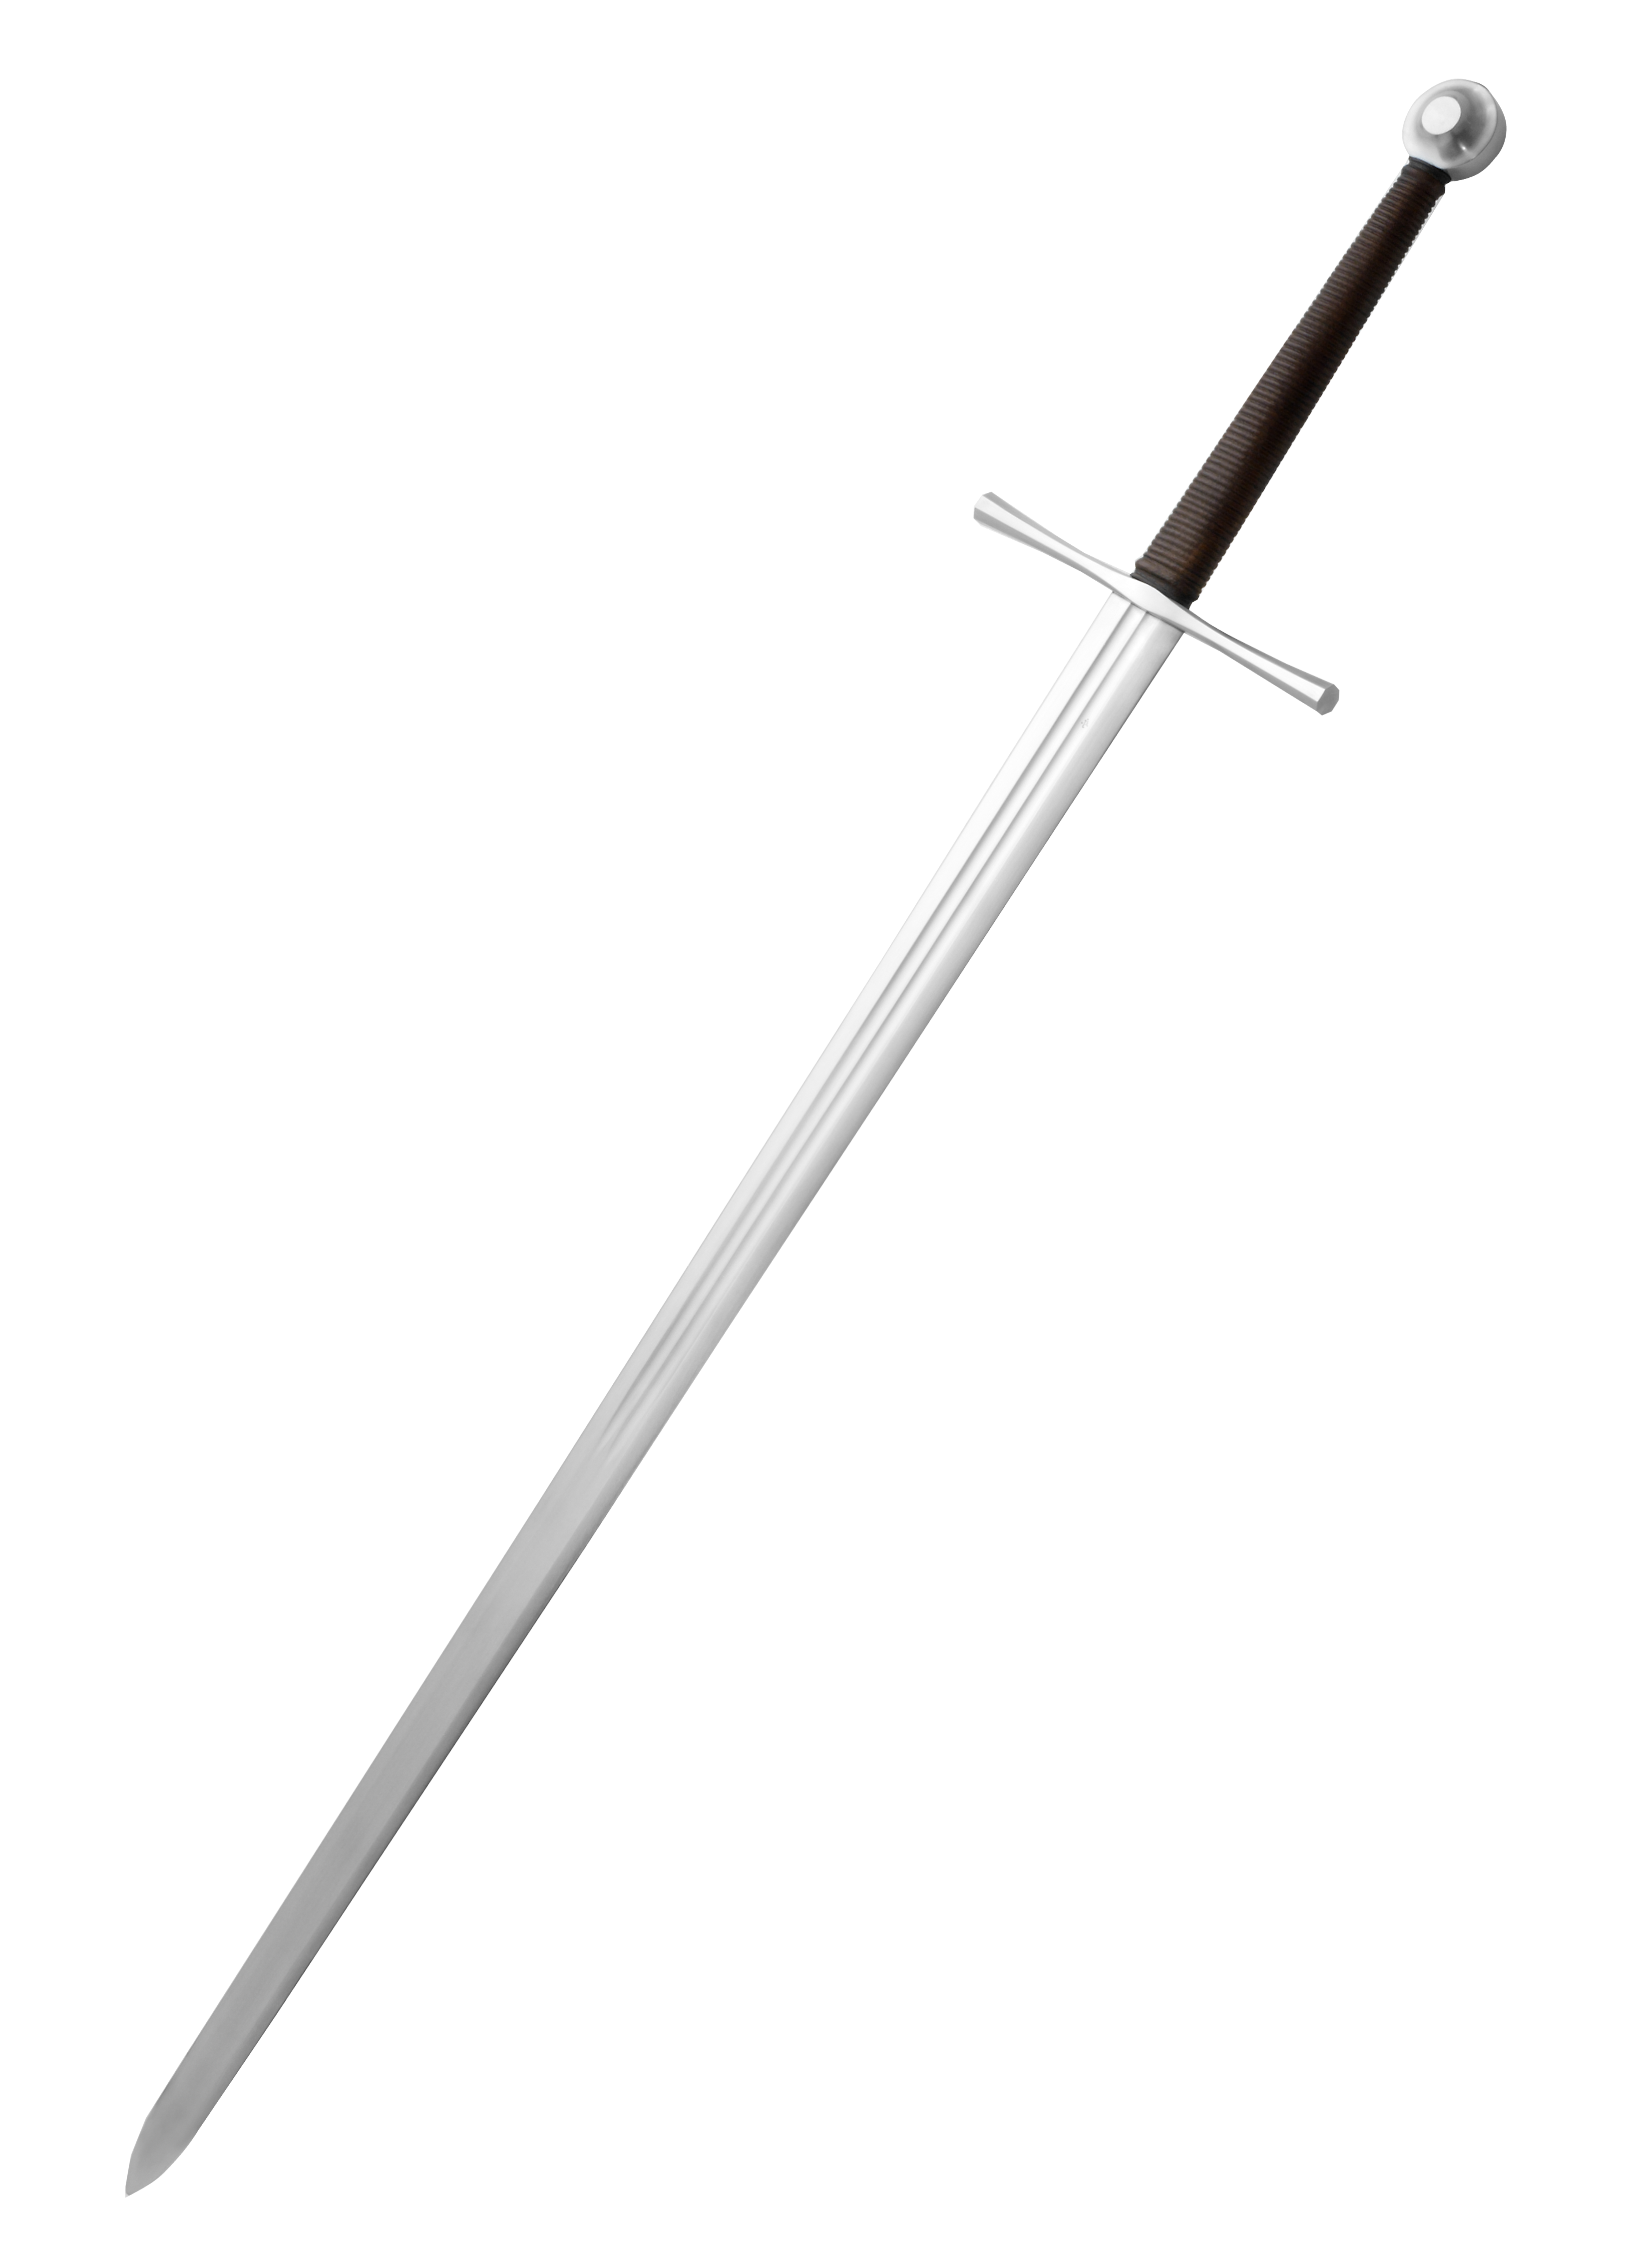 Qu'est-ce qu'une épée à la main et demie ?